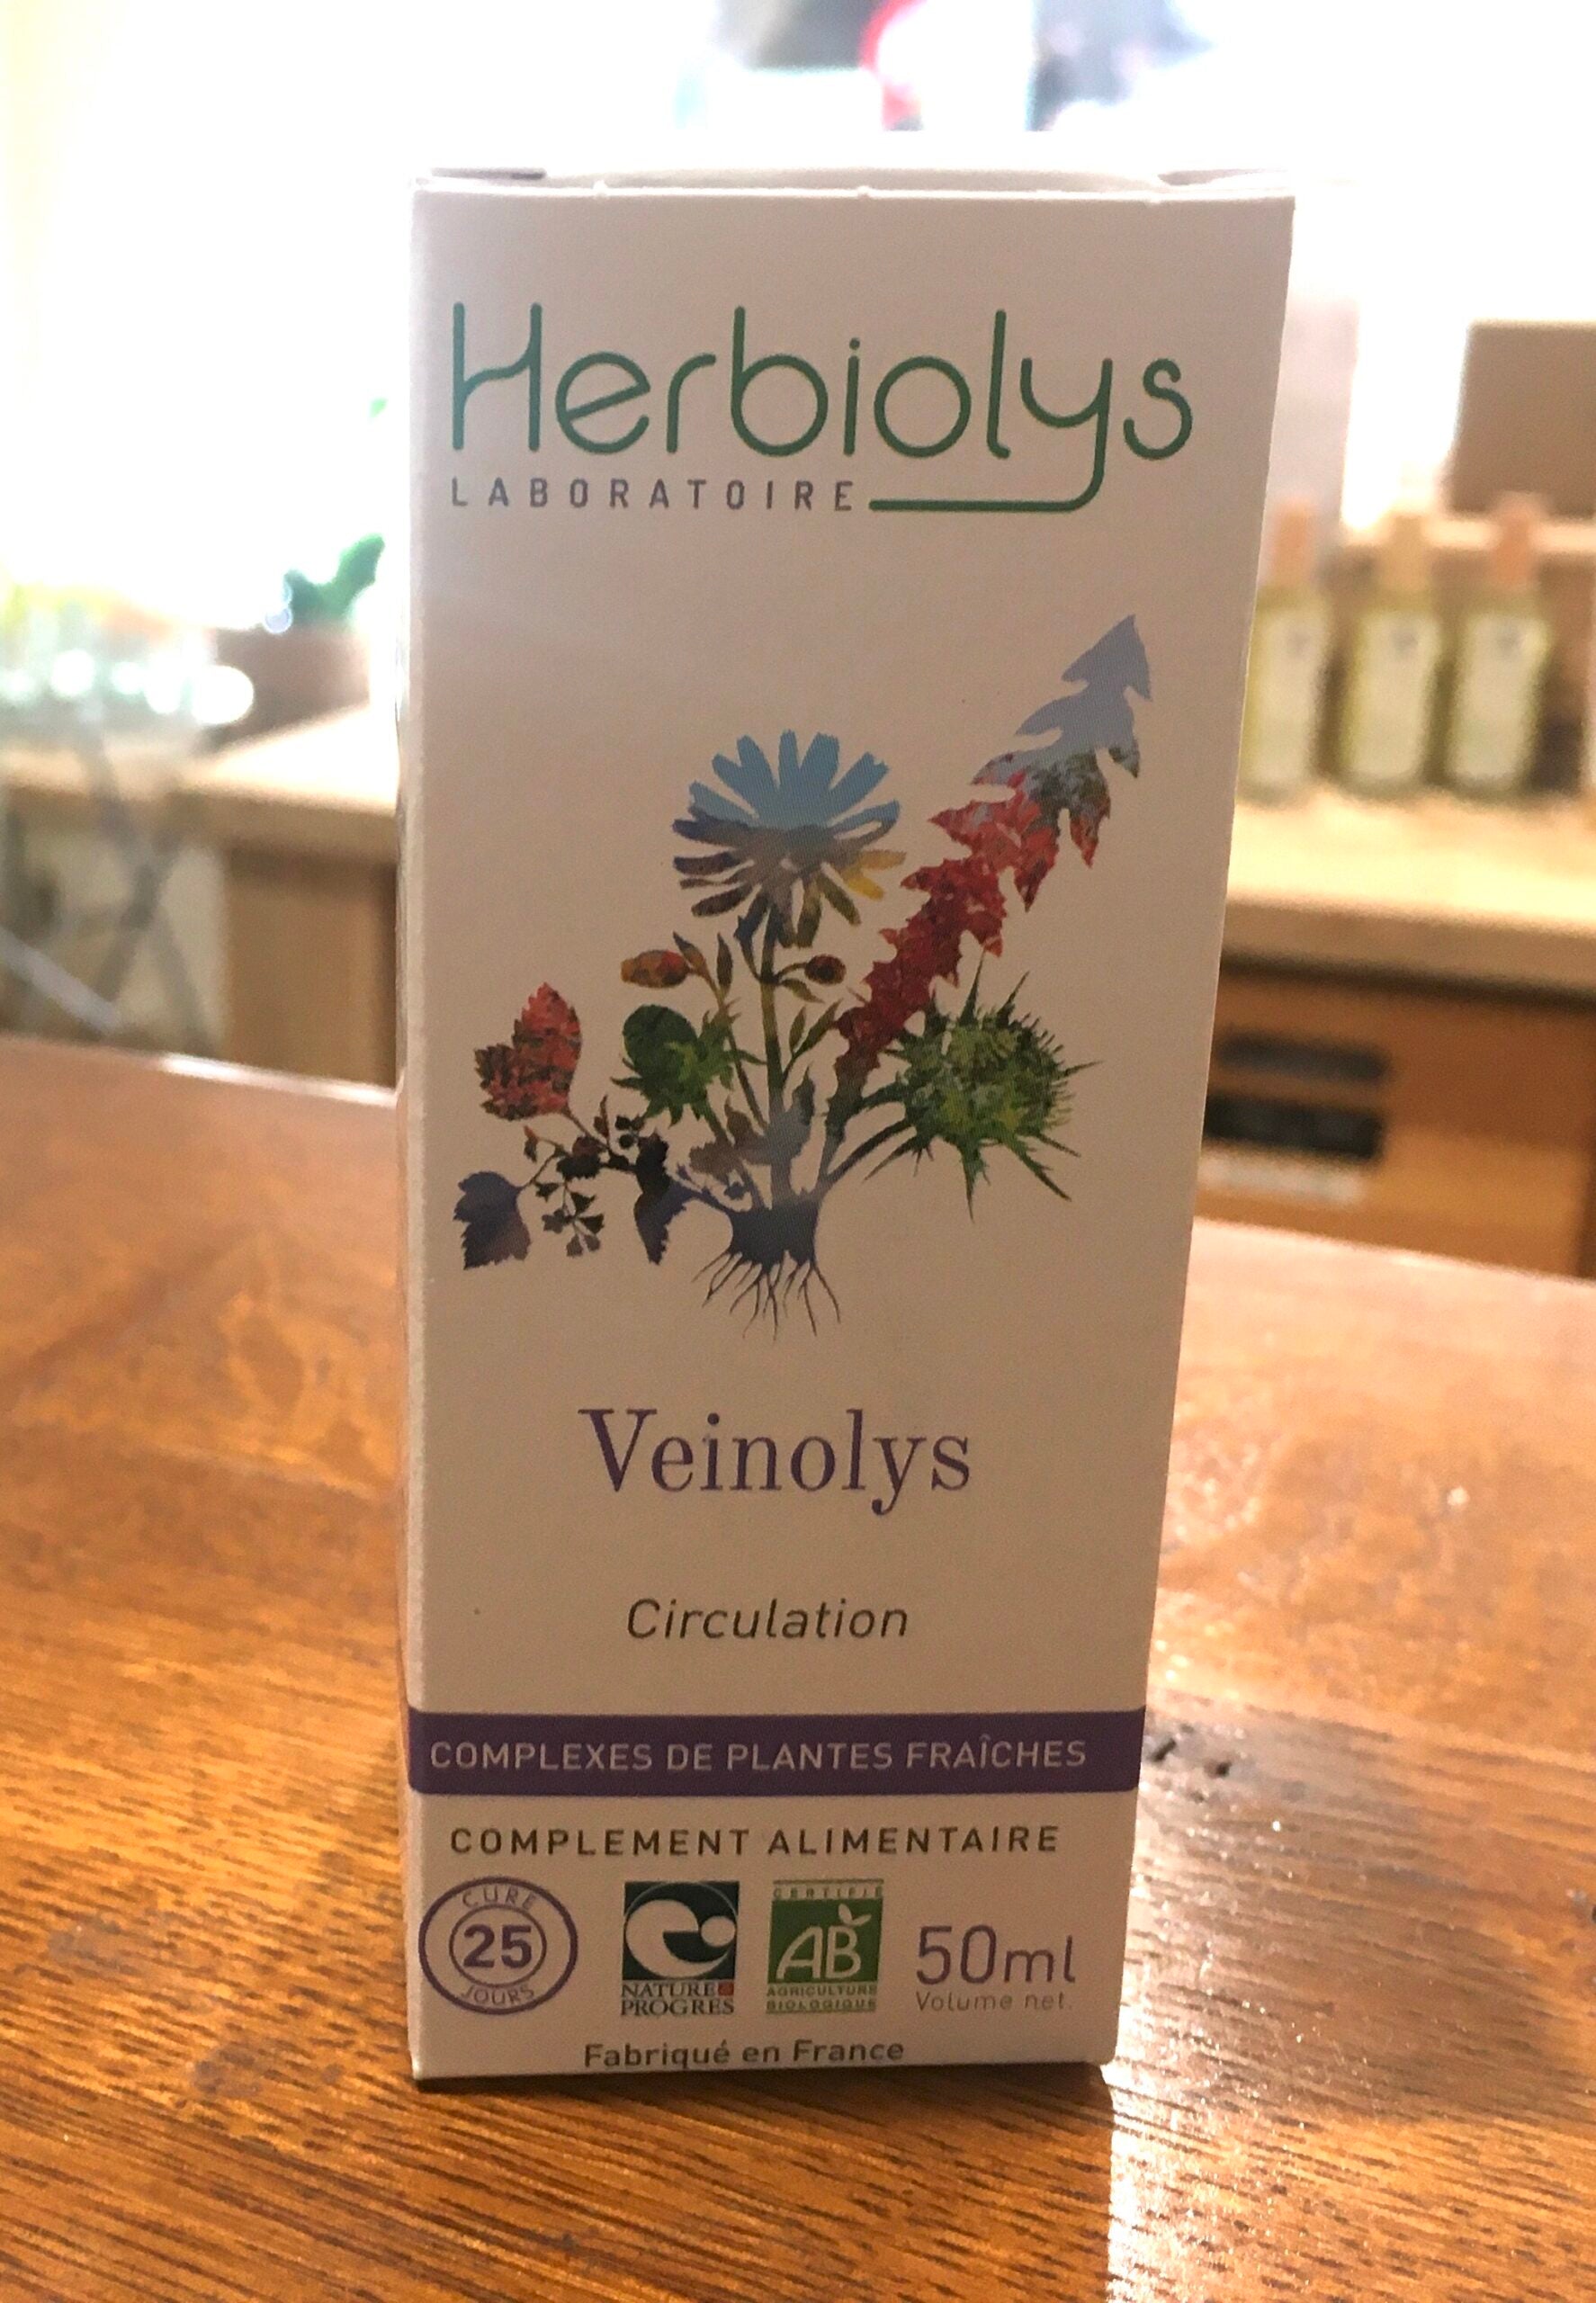 Veinolys